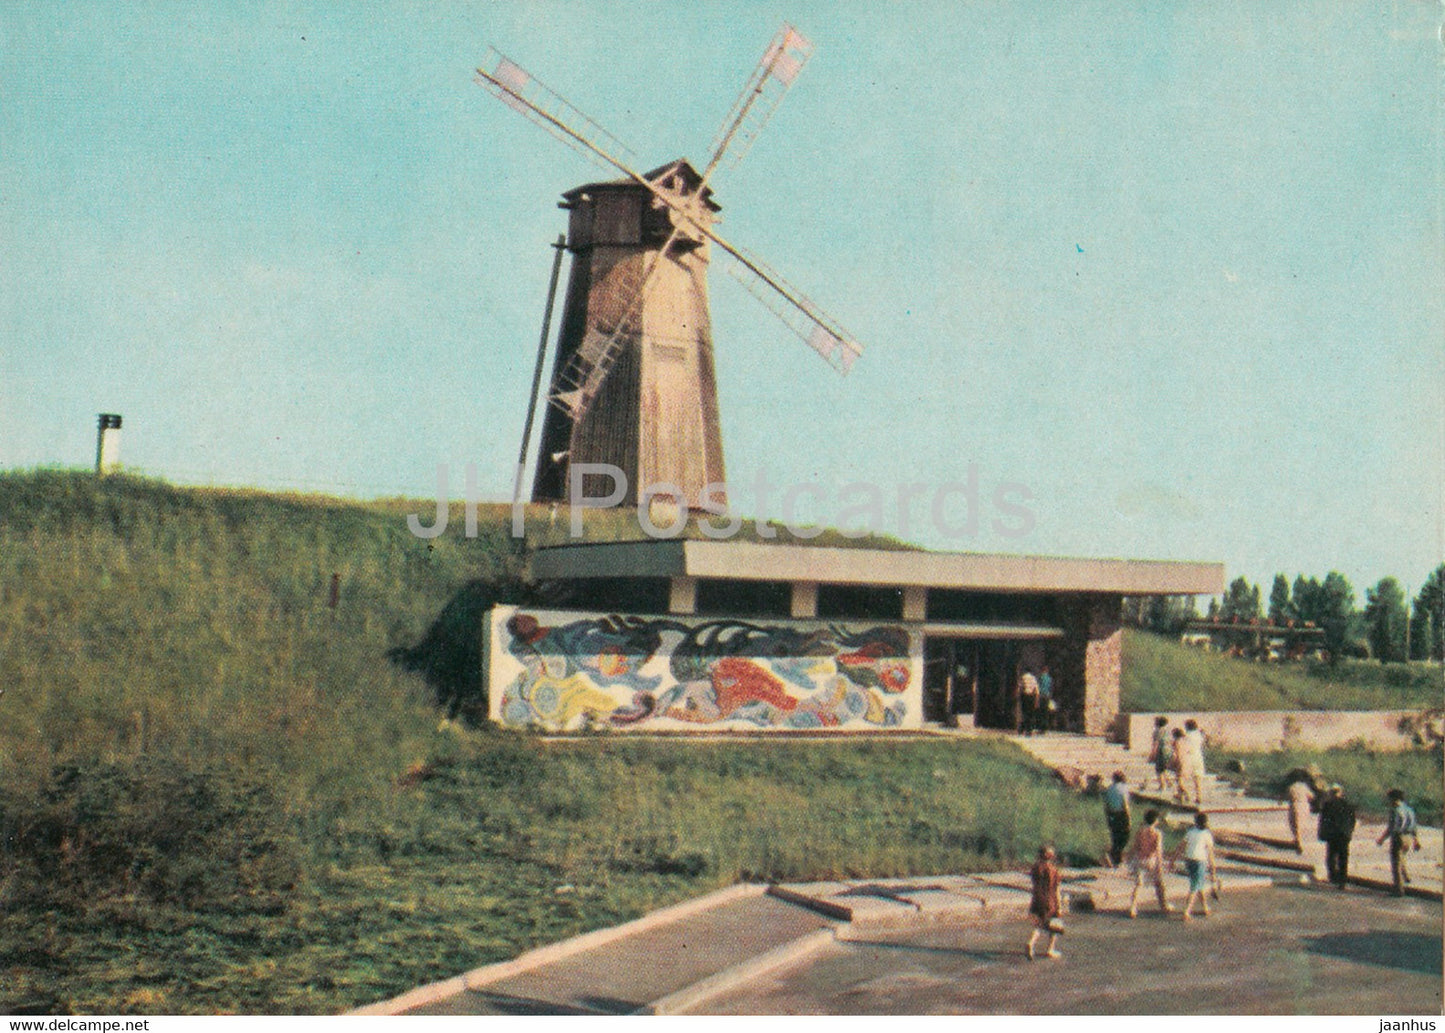 Kyiv - Kiev - Vitryak windmill restaurant - 1970 - Ukraine USSR - unused - JH Postcards